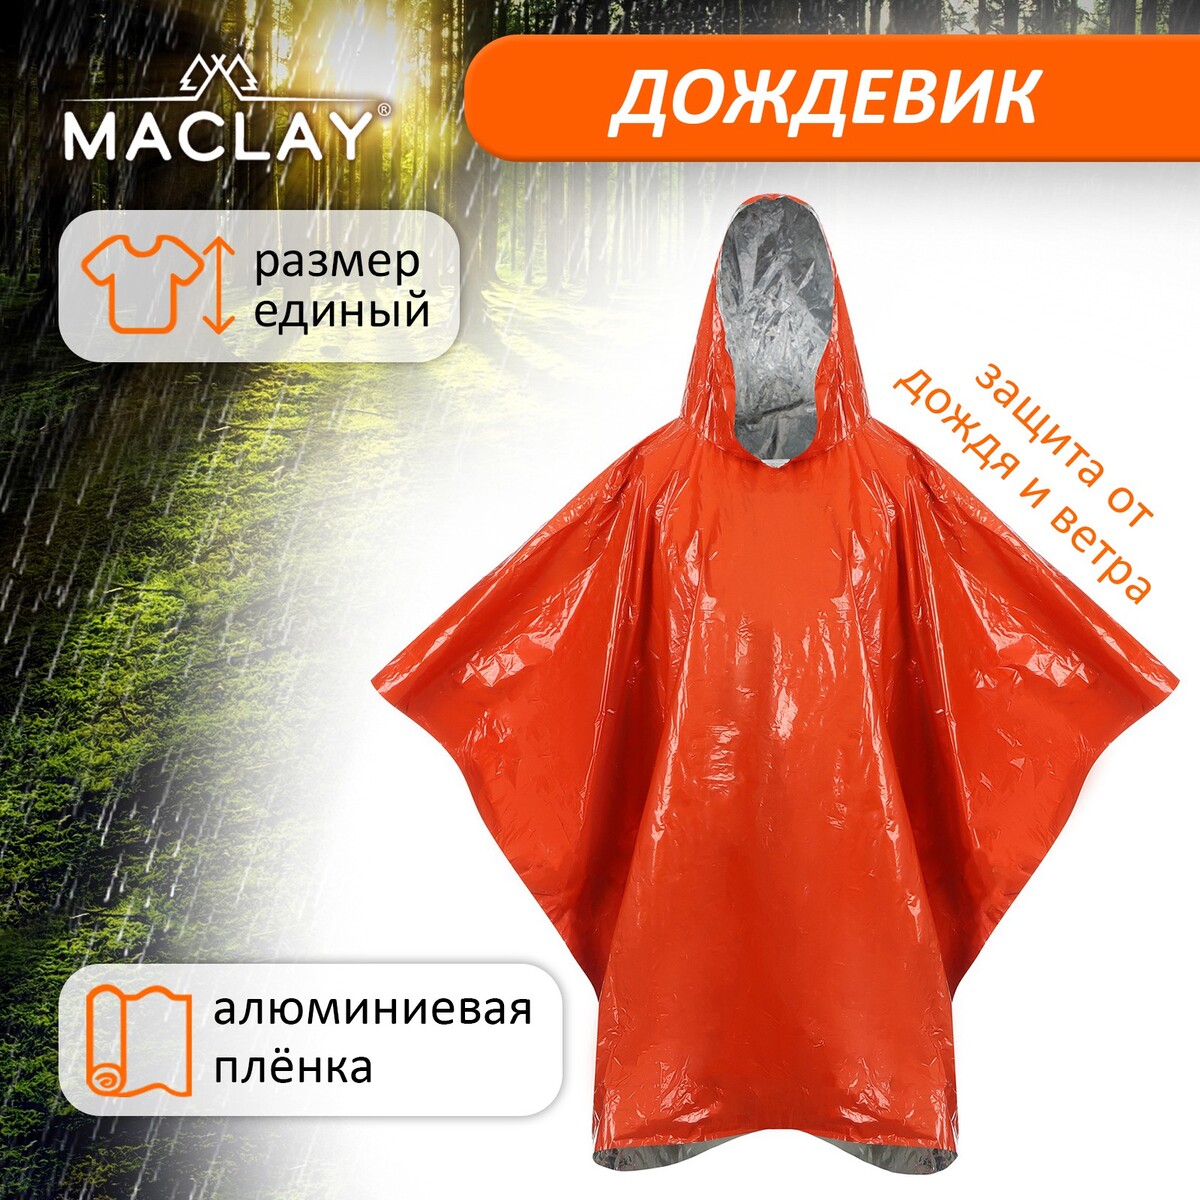 Дождевик maclay, фольгированный, 100х125 см, цвет оранжевый дождевик чехол rant 01 27 7 серый